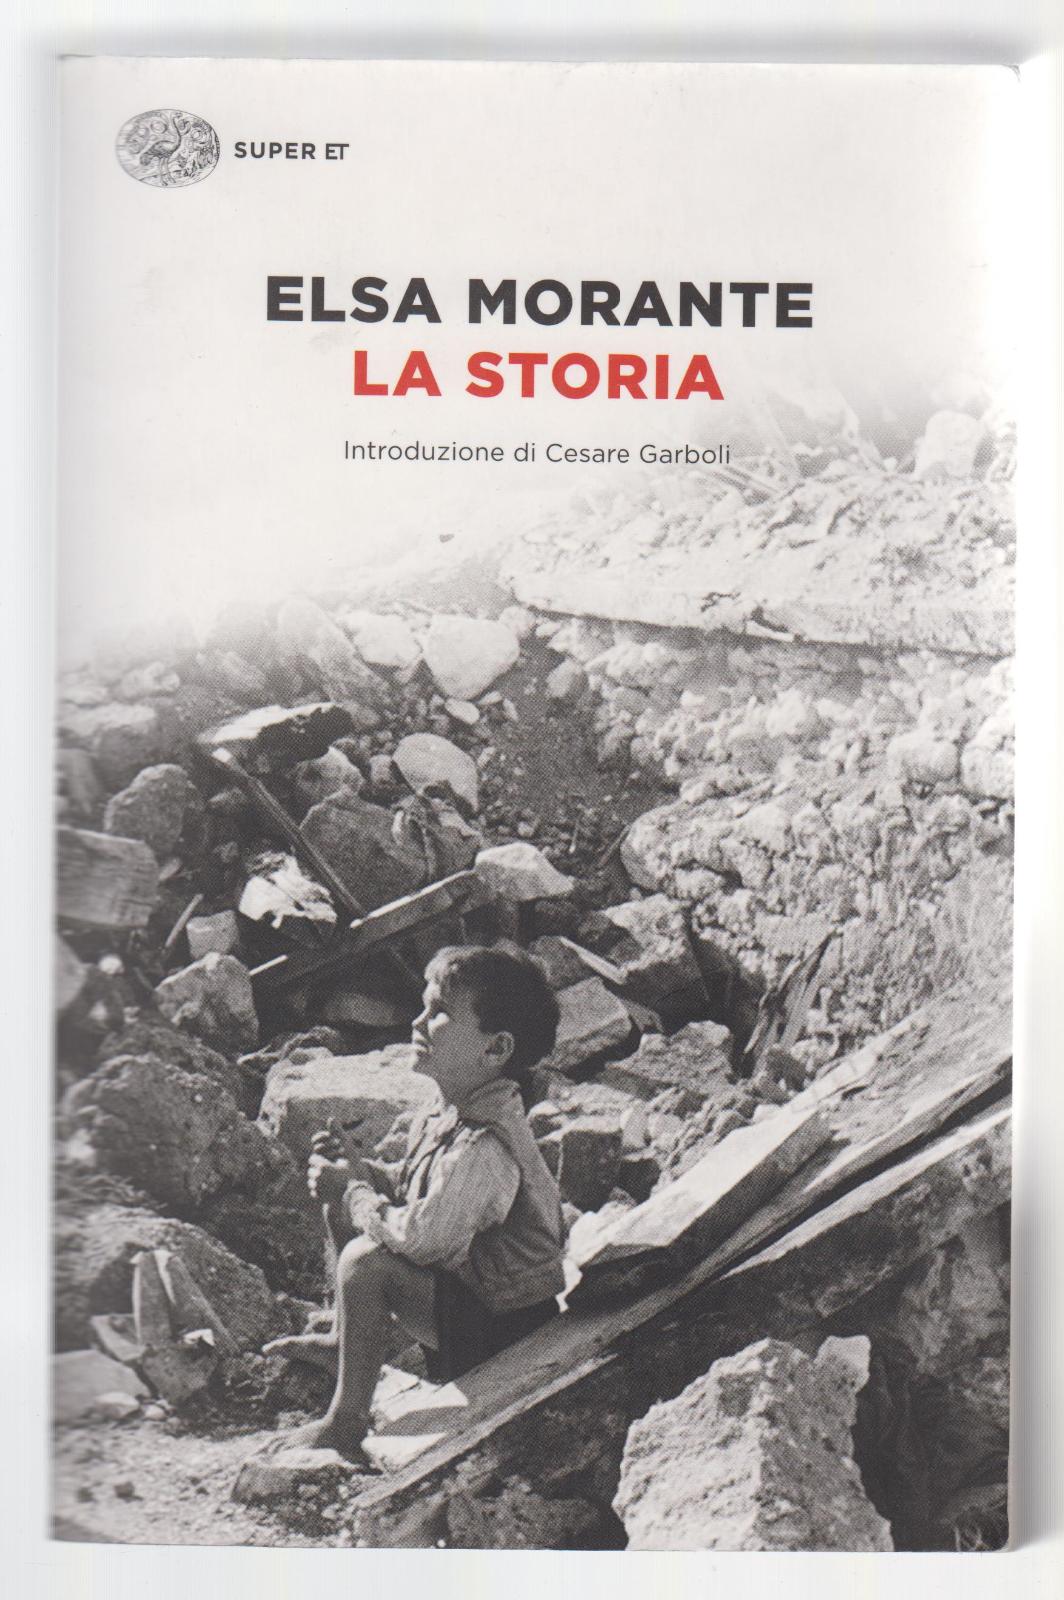 ELSA MORANTE LA STORIA EINAUDI 2014